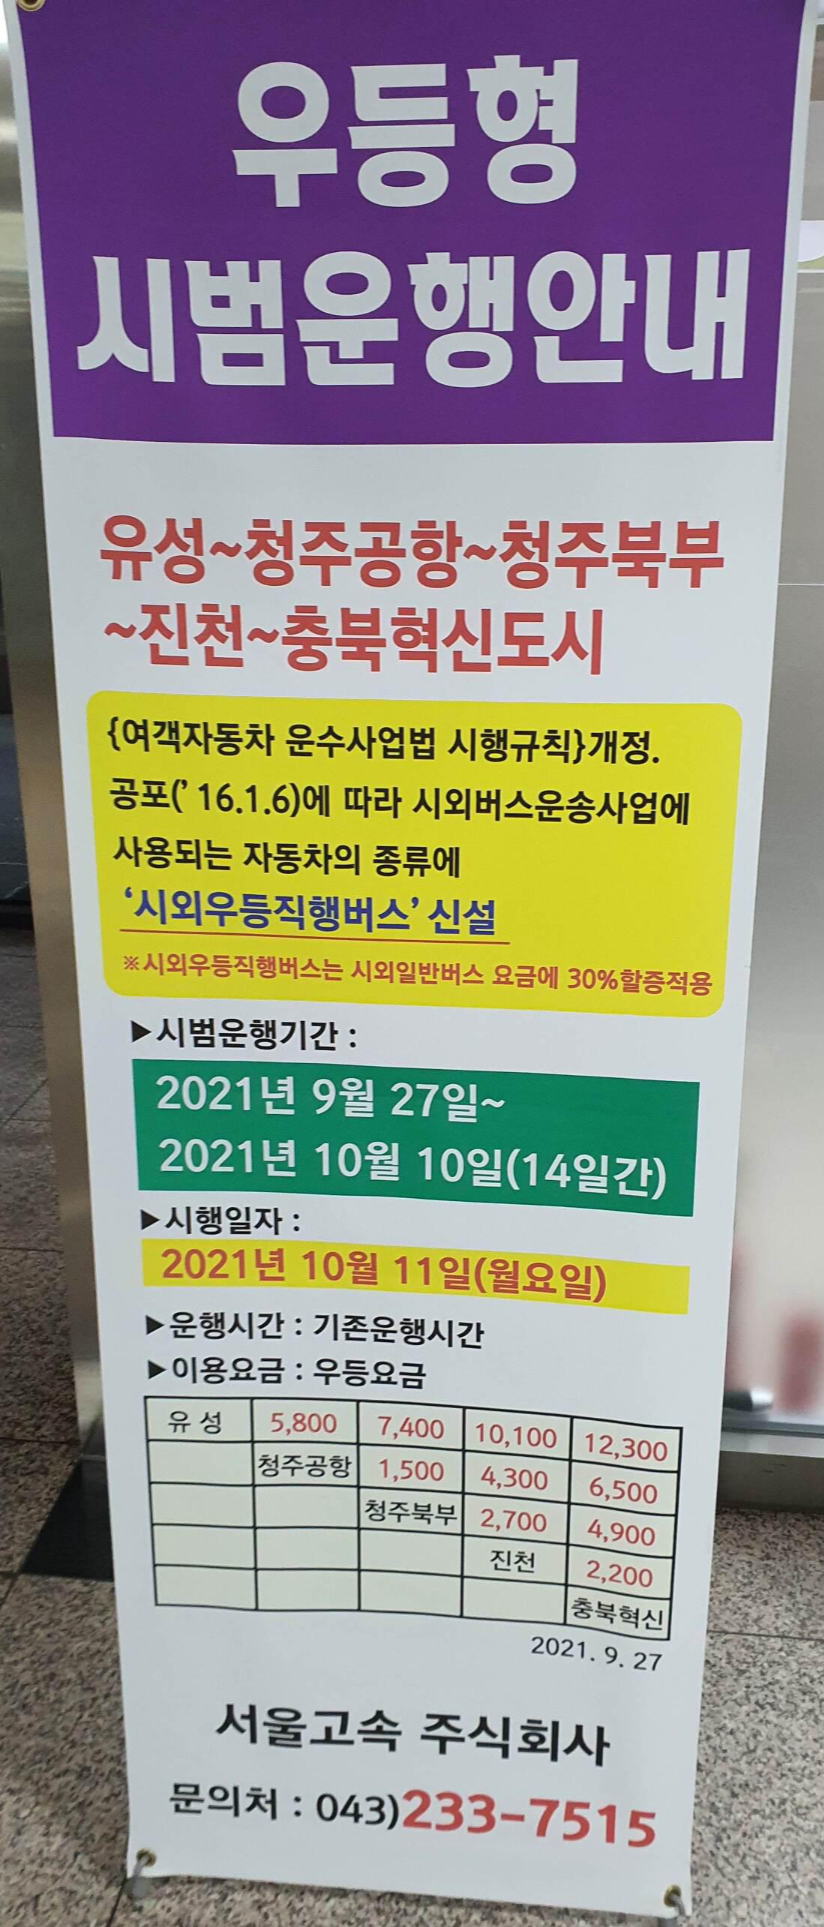 충북혁신도시 터미널 우등버스 운영안내